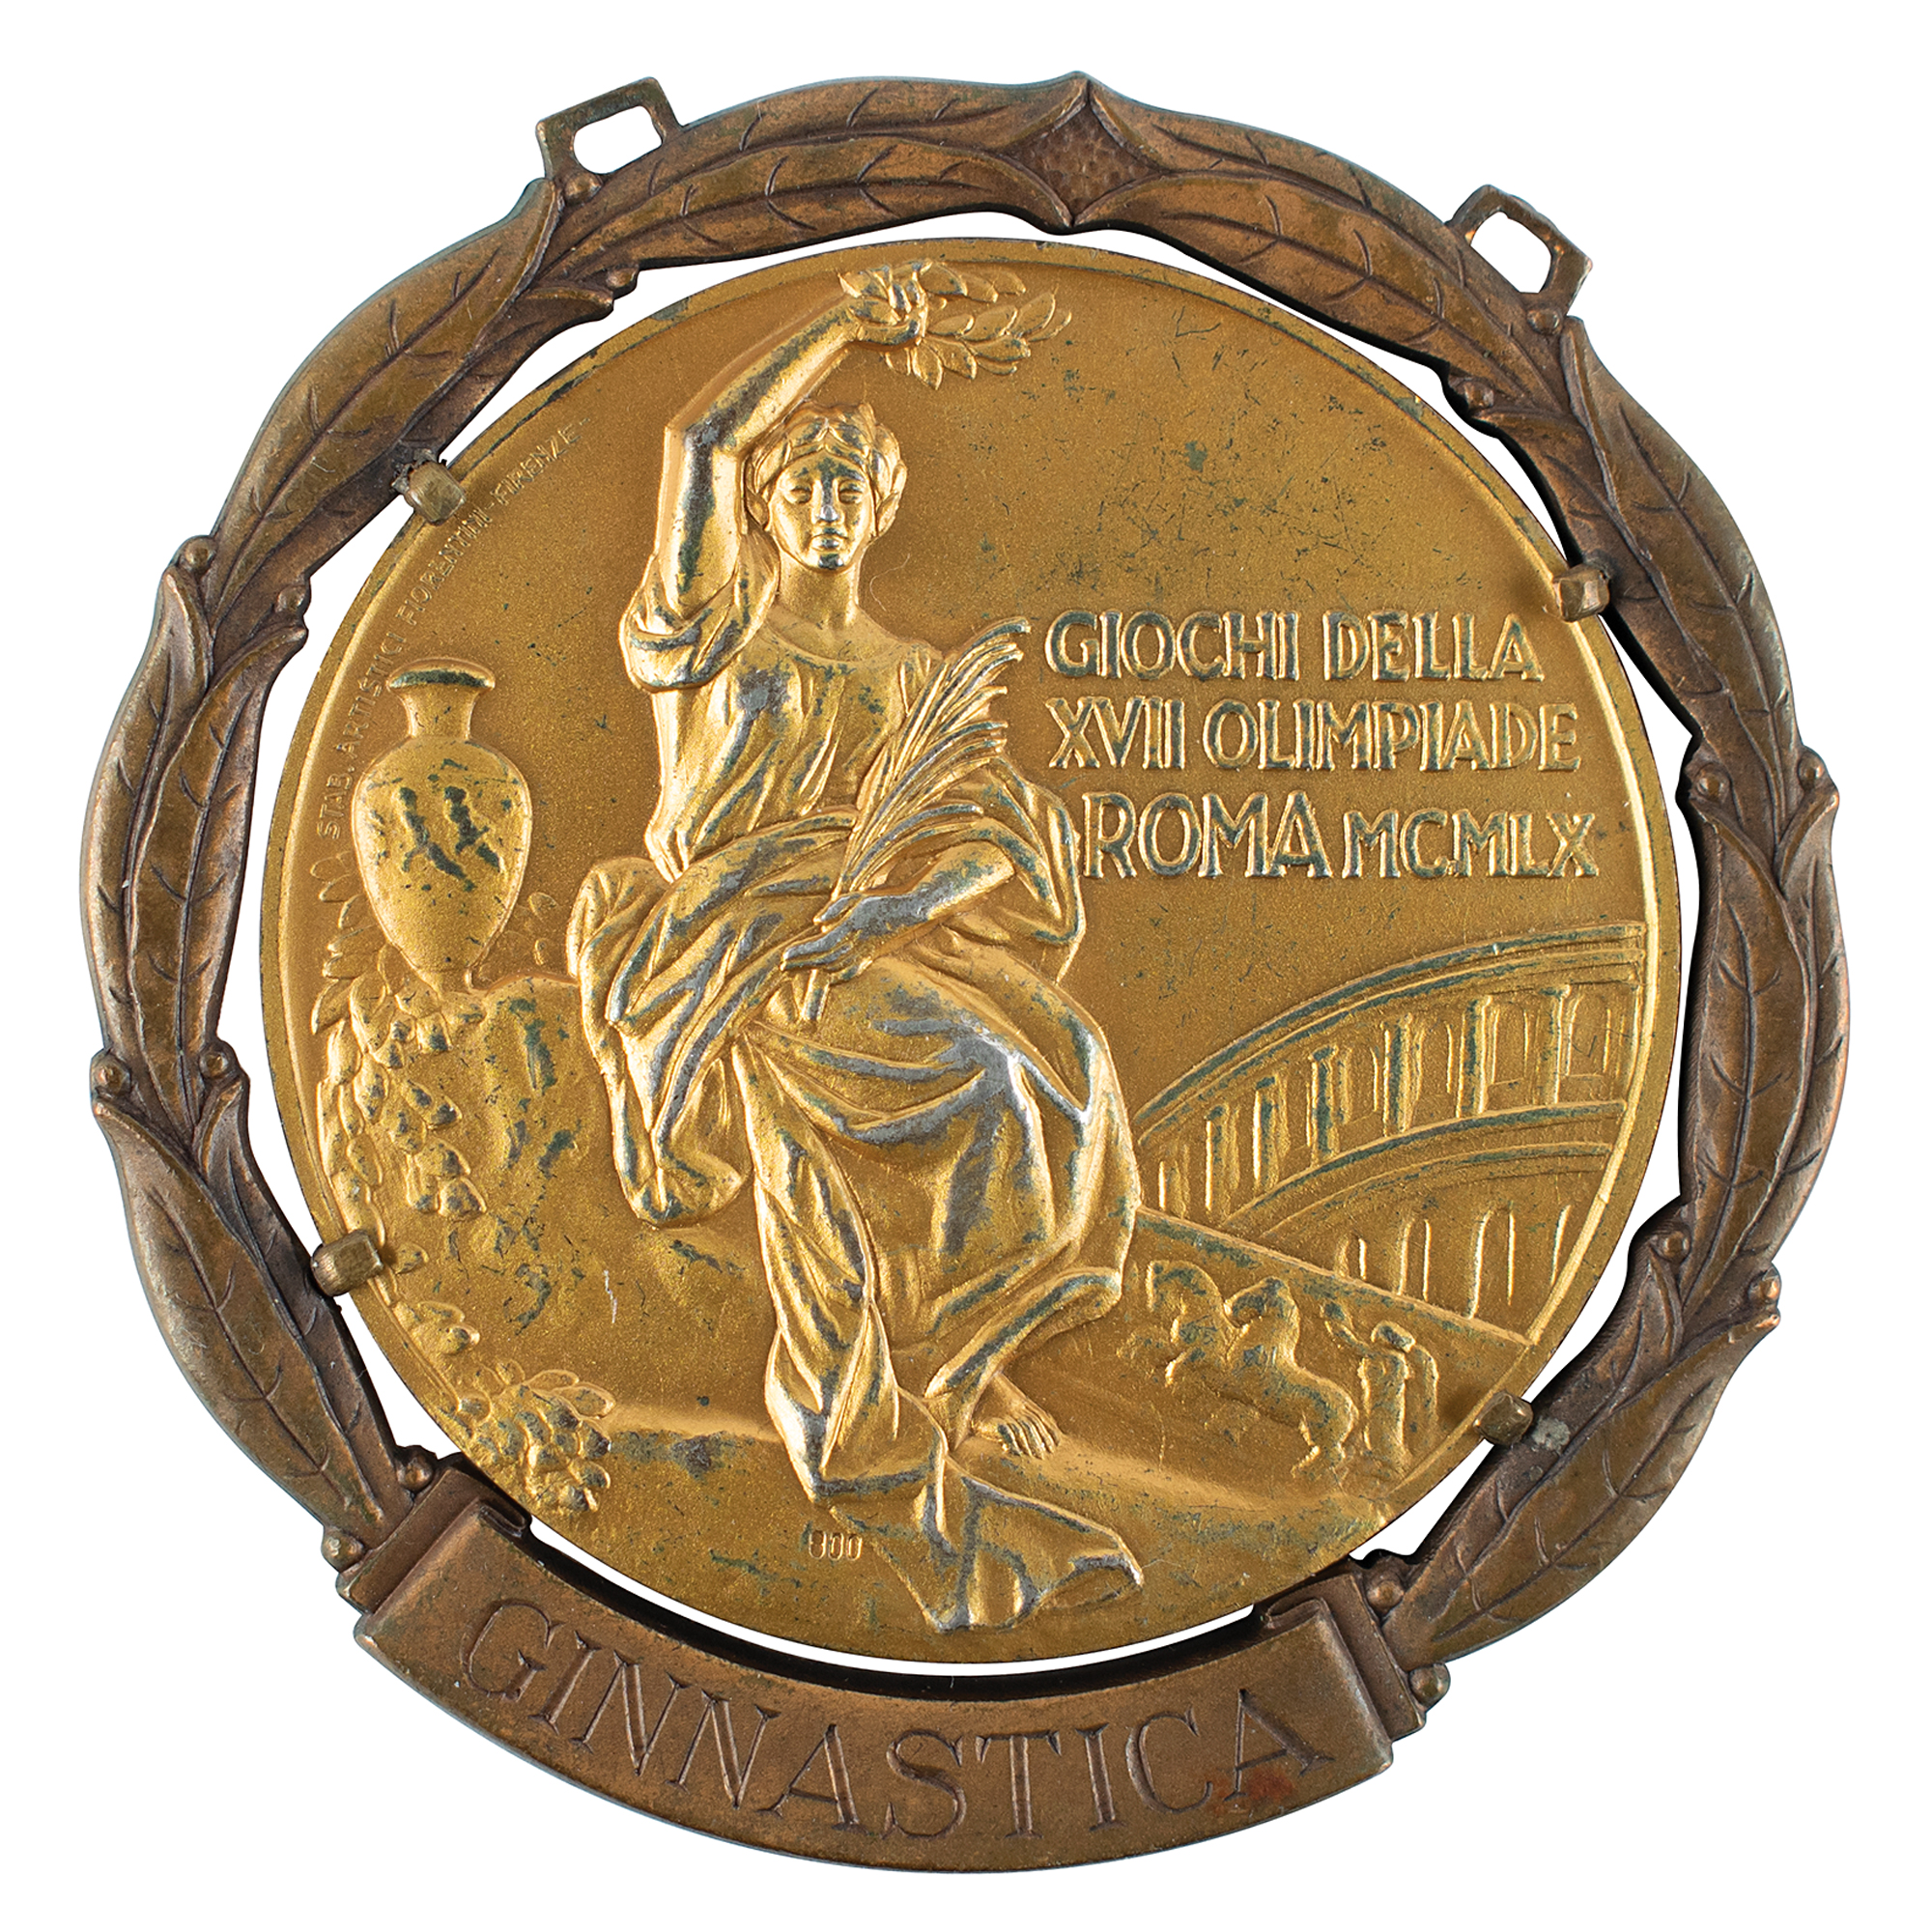 Lot #6063 Rome 1960 Summer Olympics Gold Winner's Medal